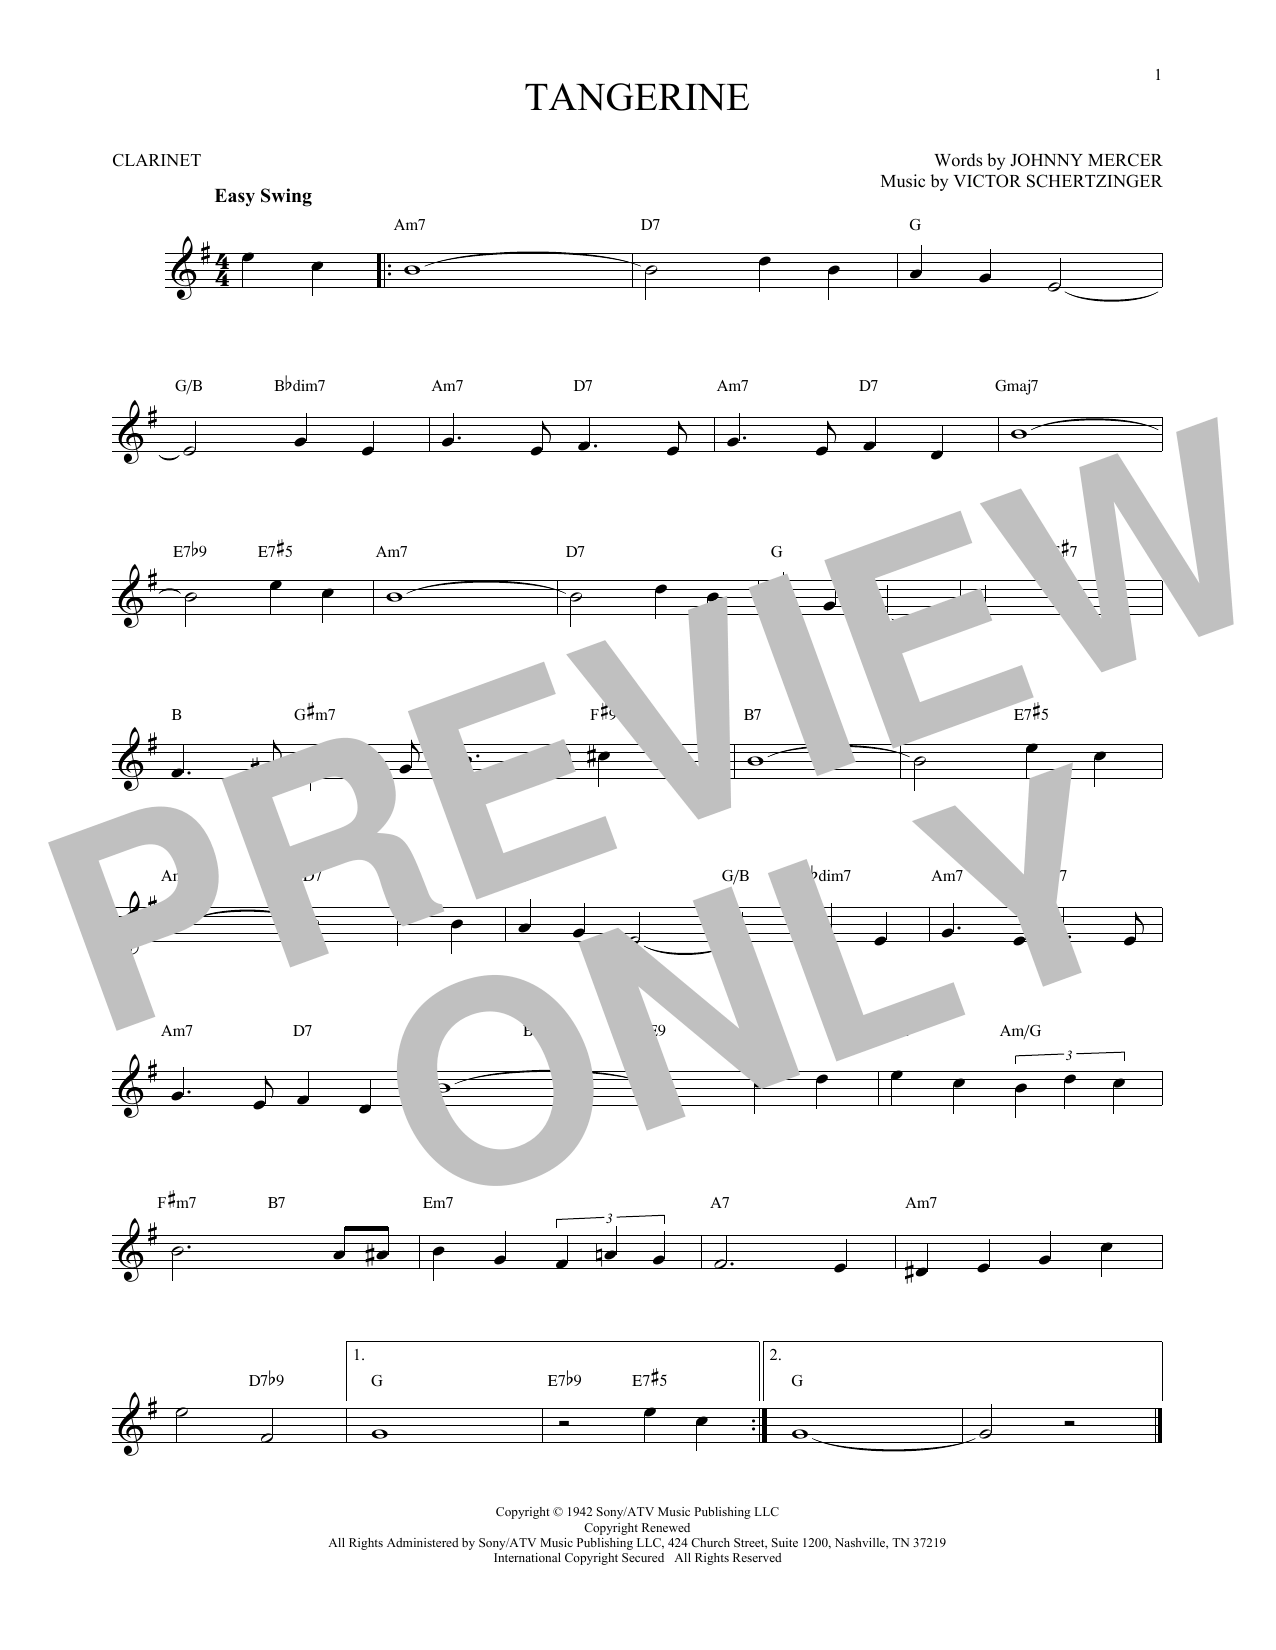 Tangerine (Clarinet Solo) von Jimmy Dorsey & His Orchestra